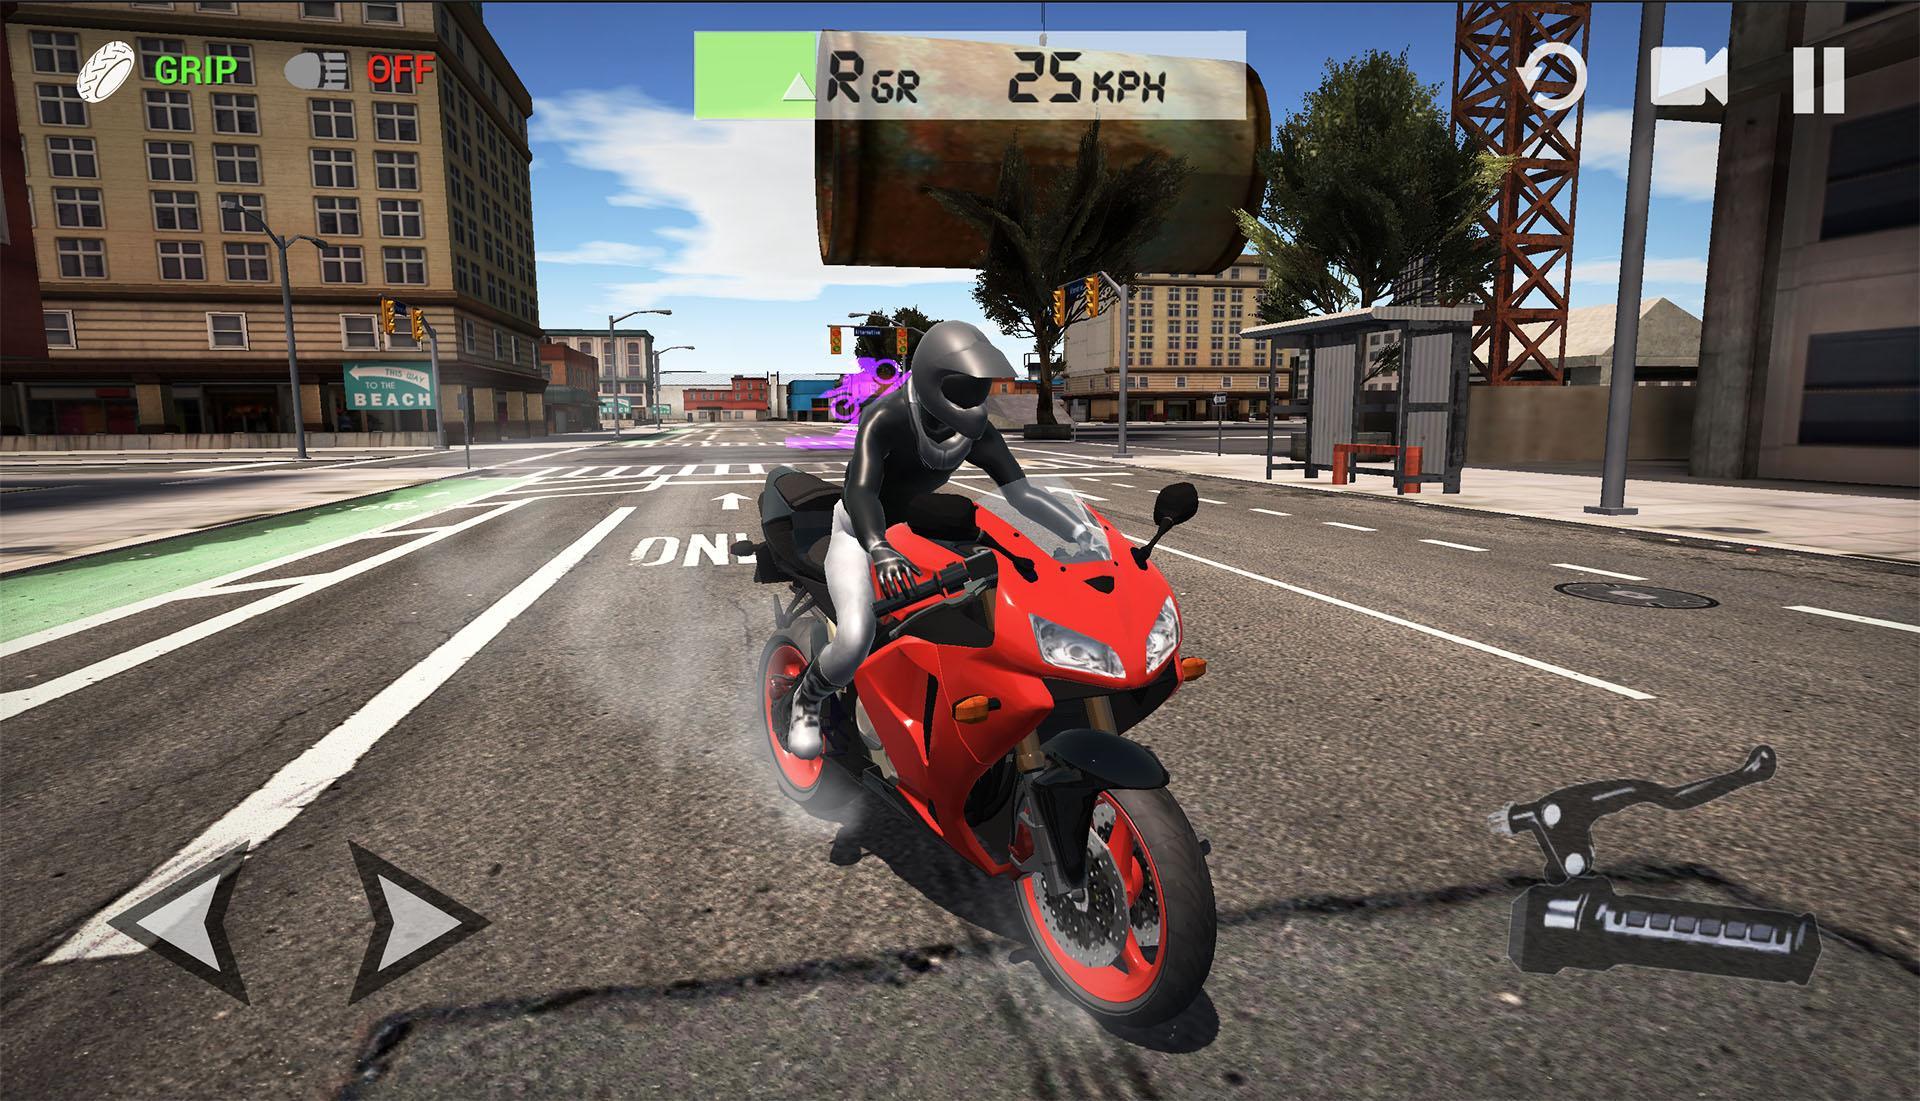 Screenshot 1 of Ultimo simulatore di moto 3.73